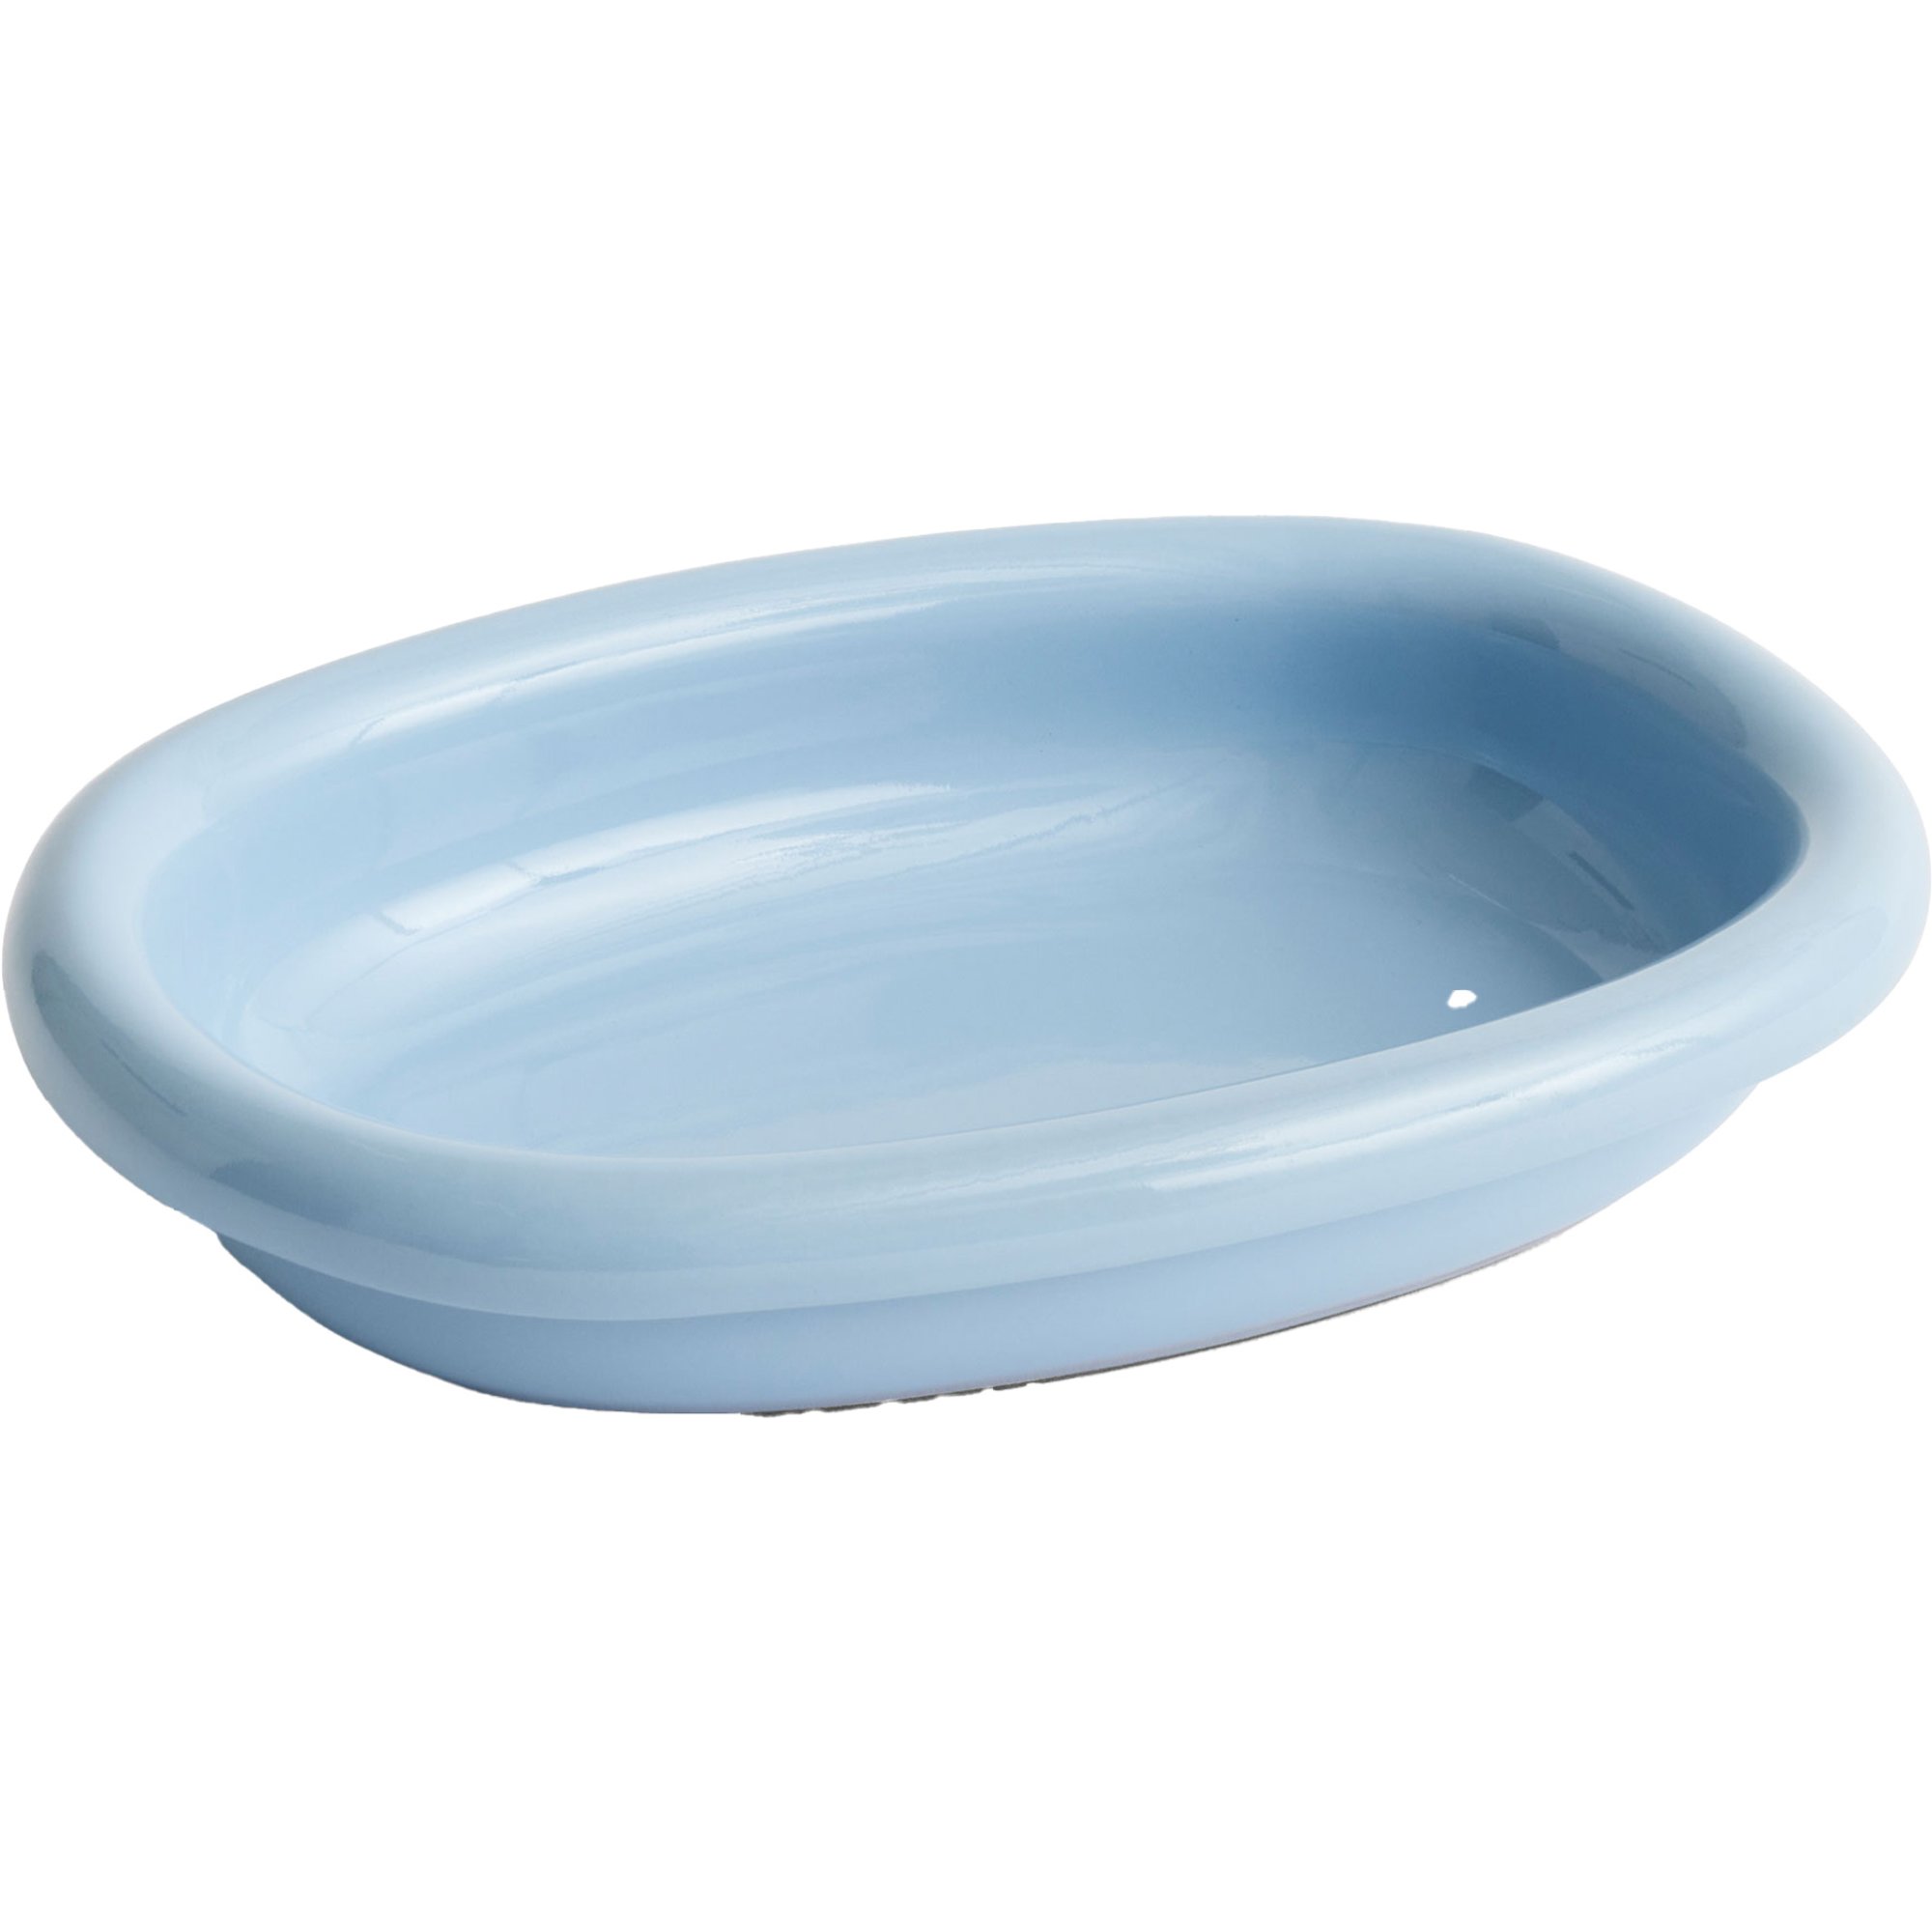 5: HAY Barro oval tallerken small, lyseblå